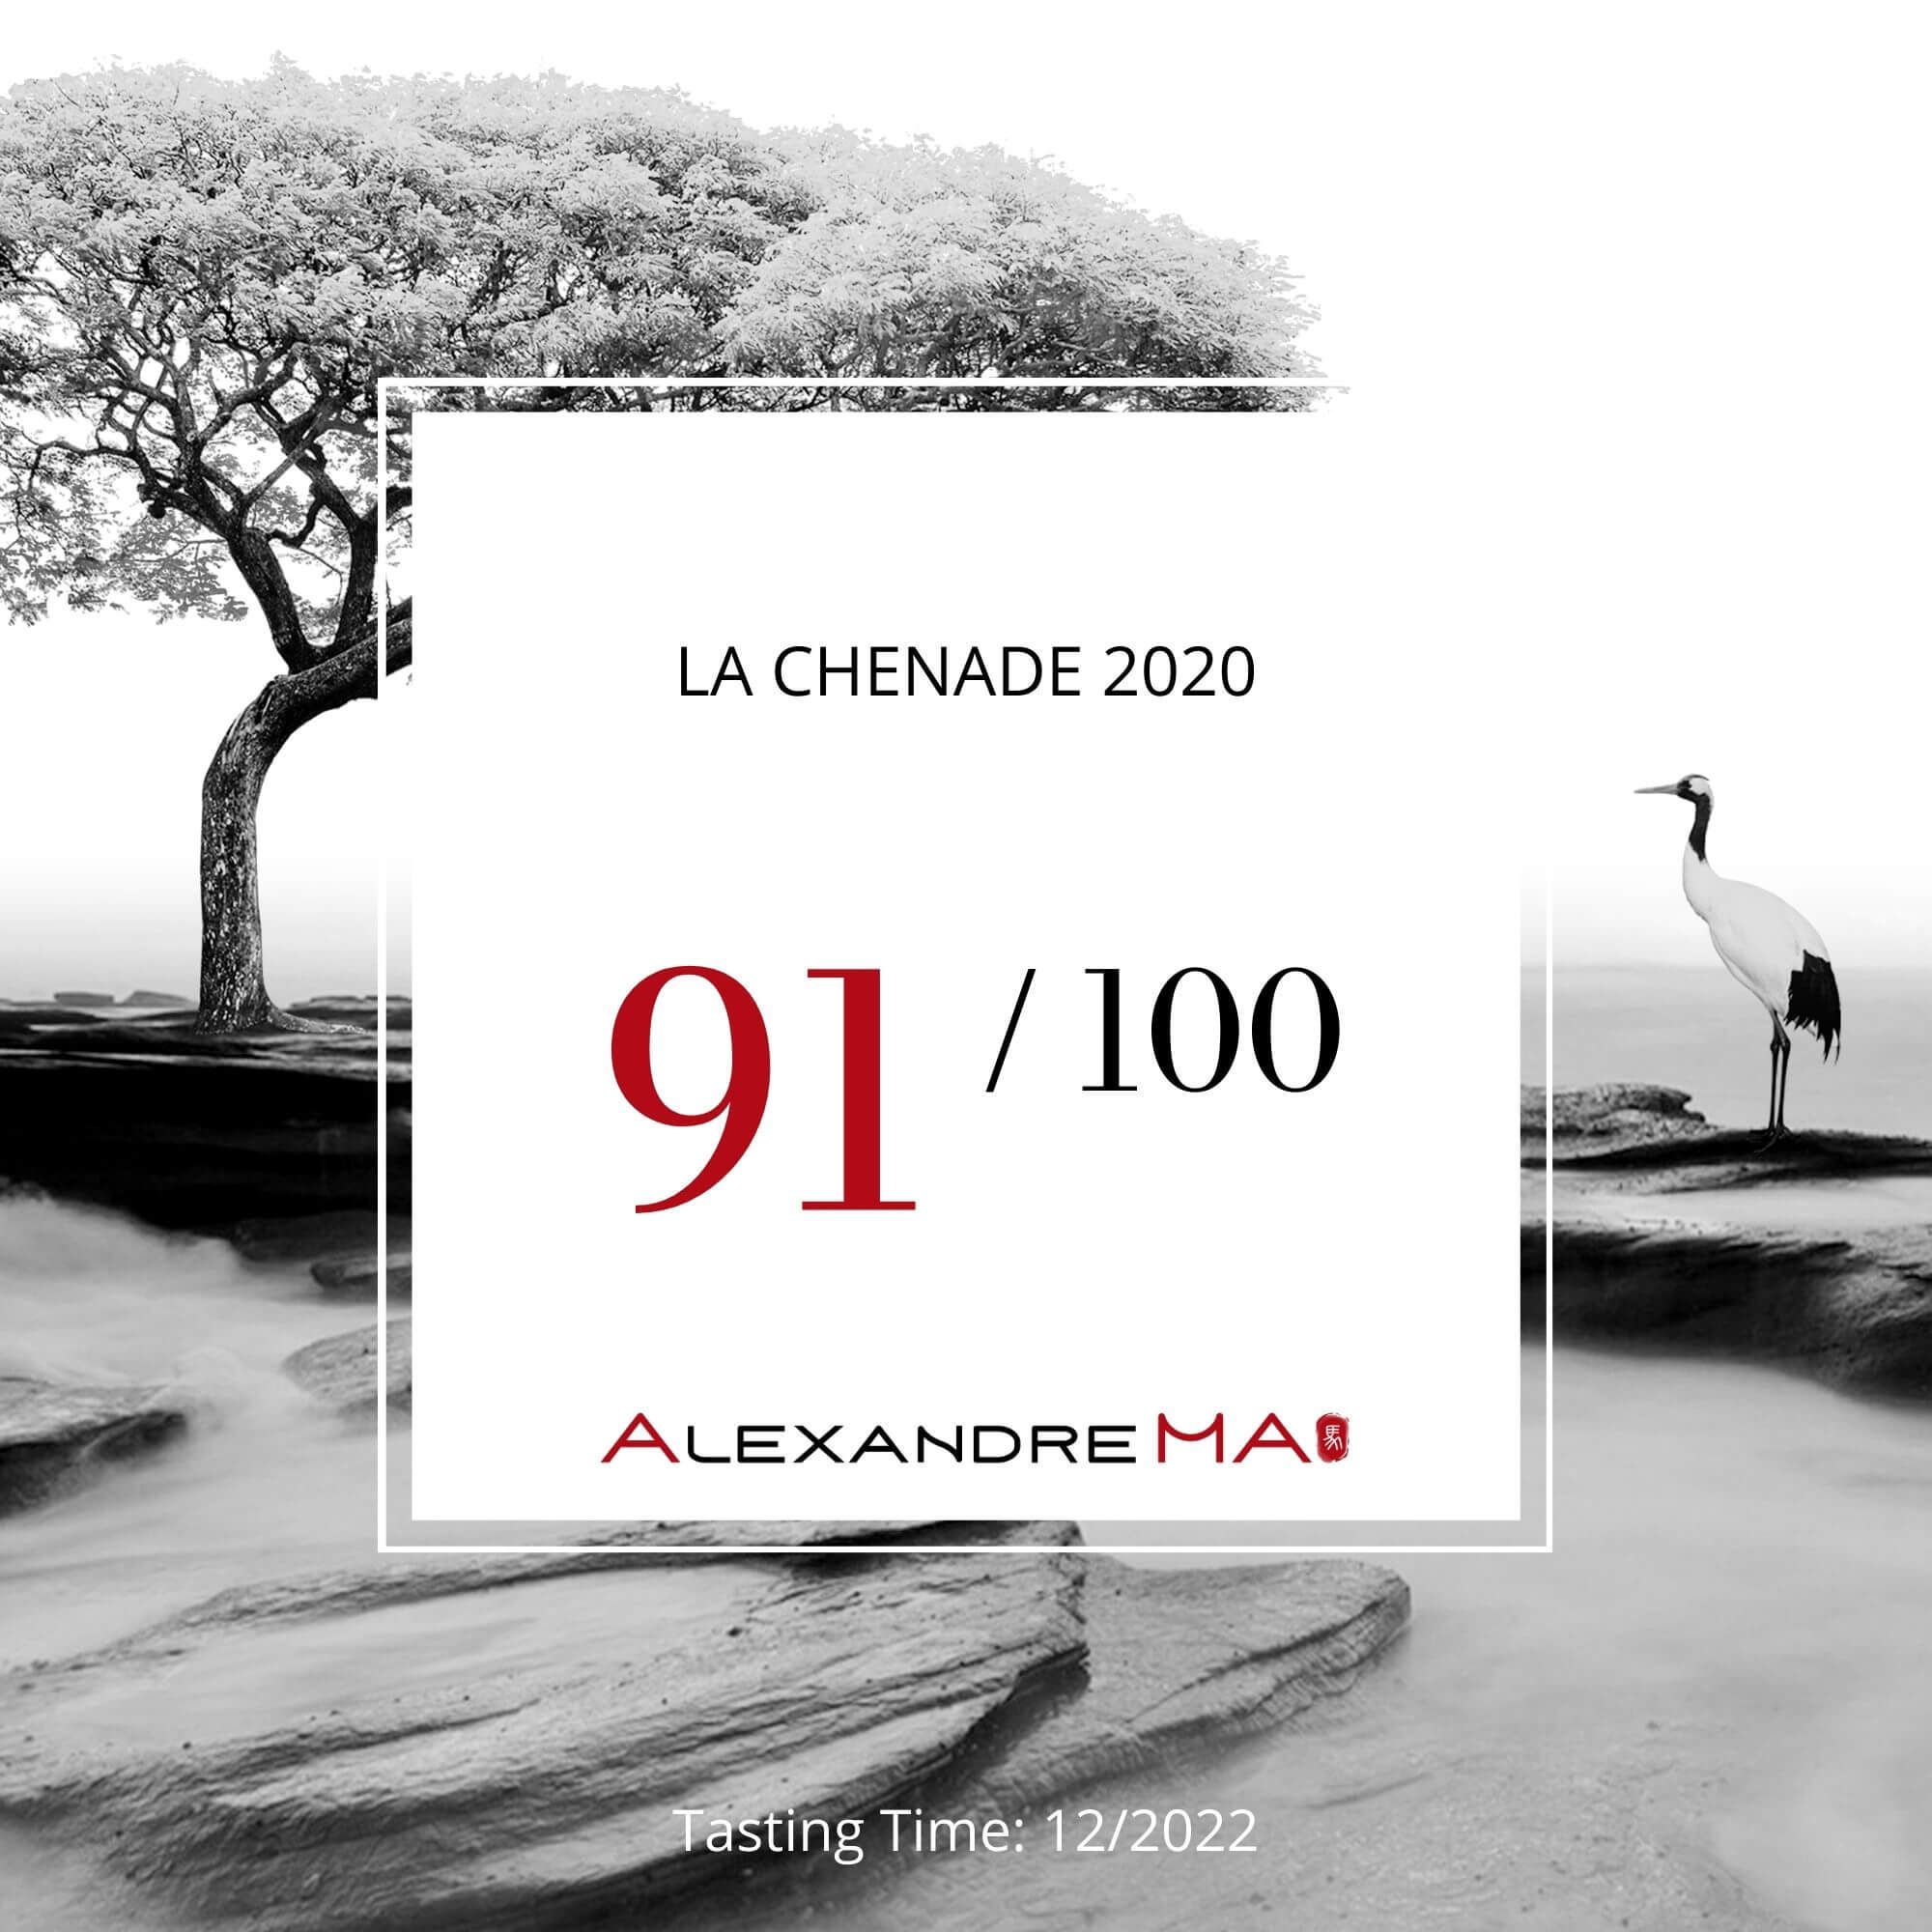 La Chenade 2020 - Alexandre MA